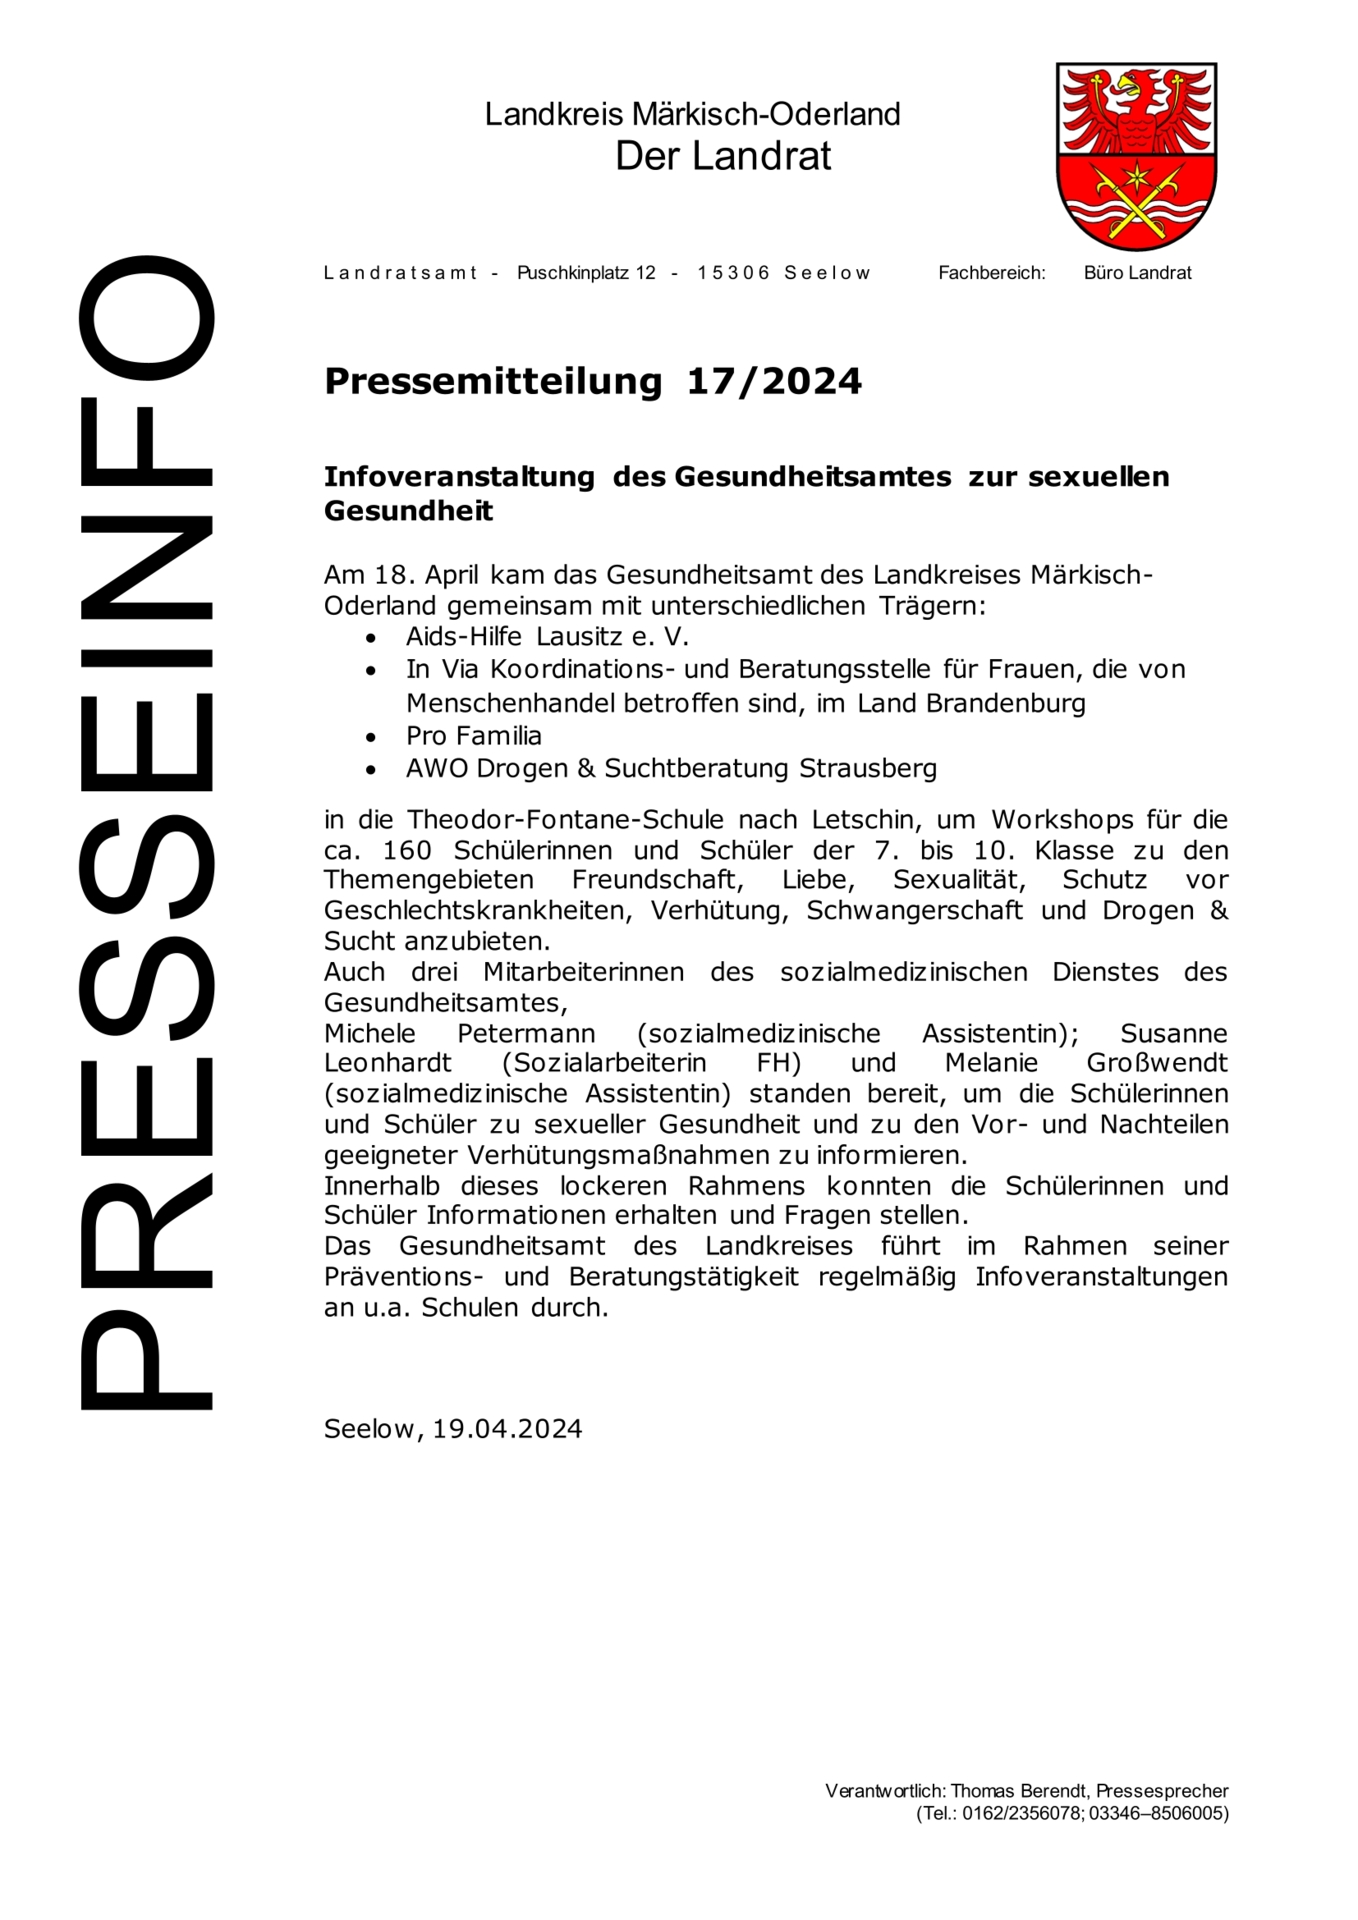 Pressemitteilung - 11.04.2024 - 172024 - Infoveranstaltung des Gesundheitsamtes zur sexuellen Gesund